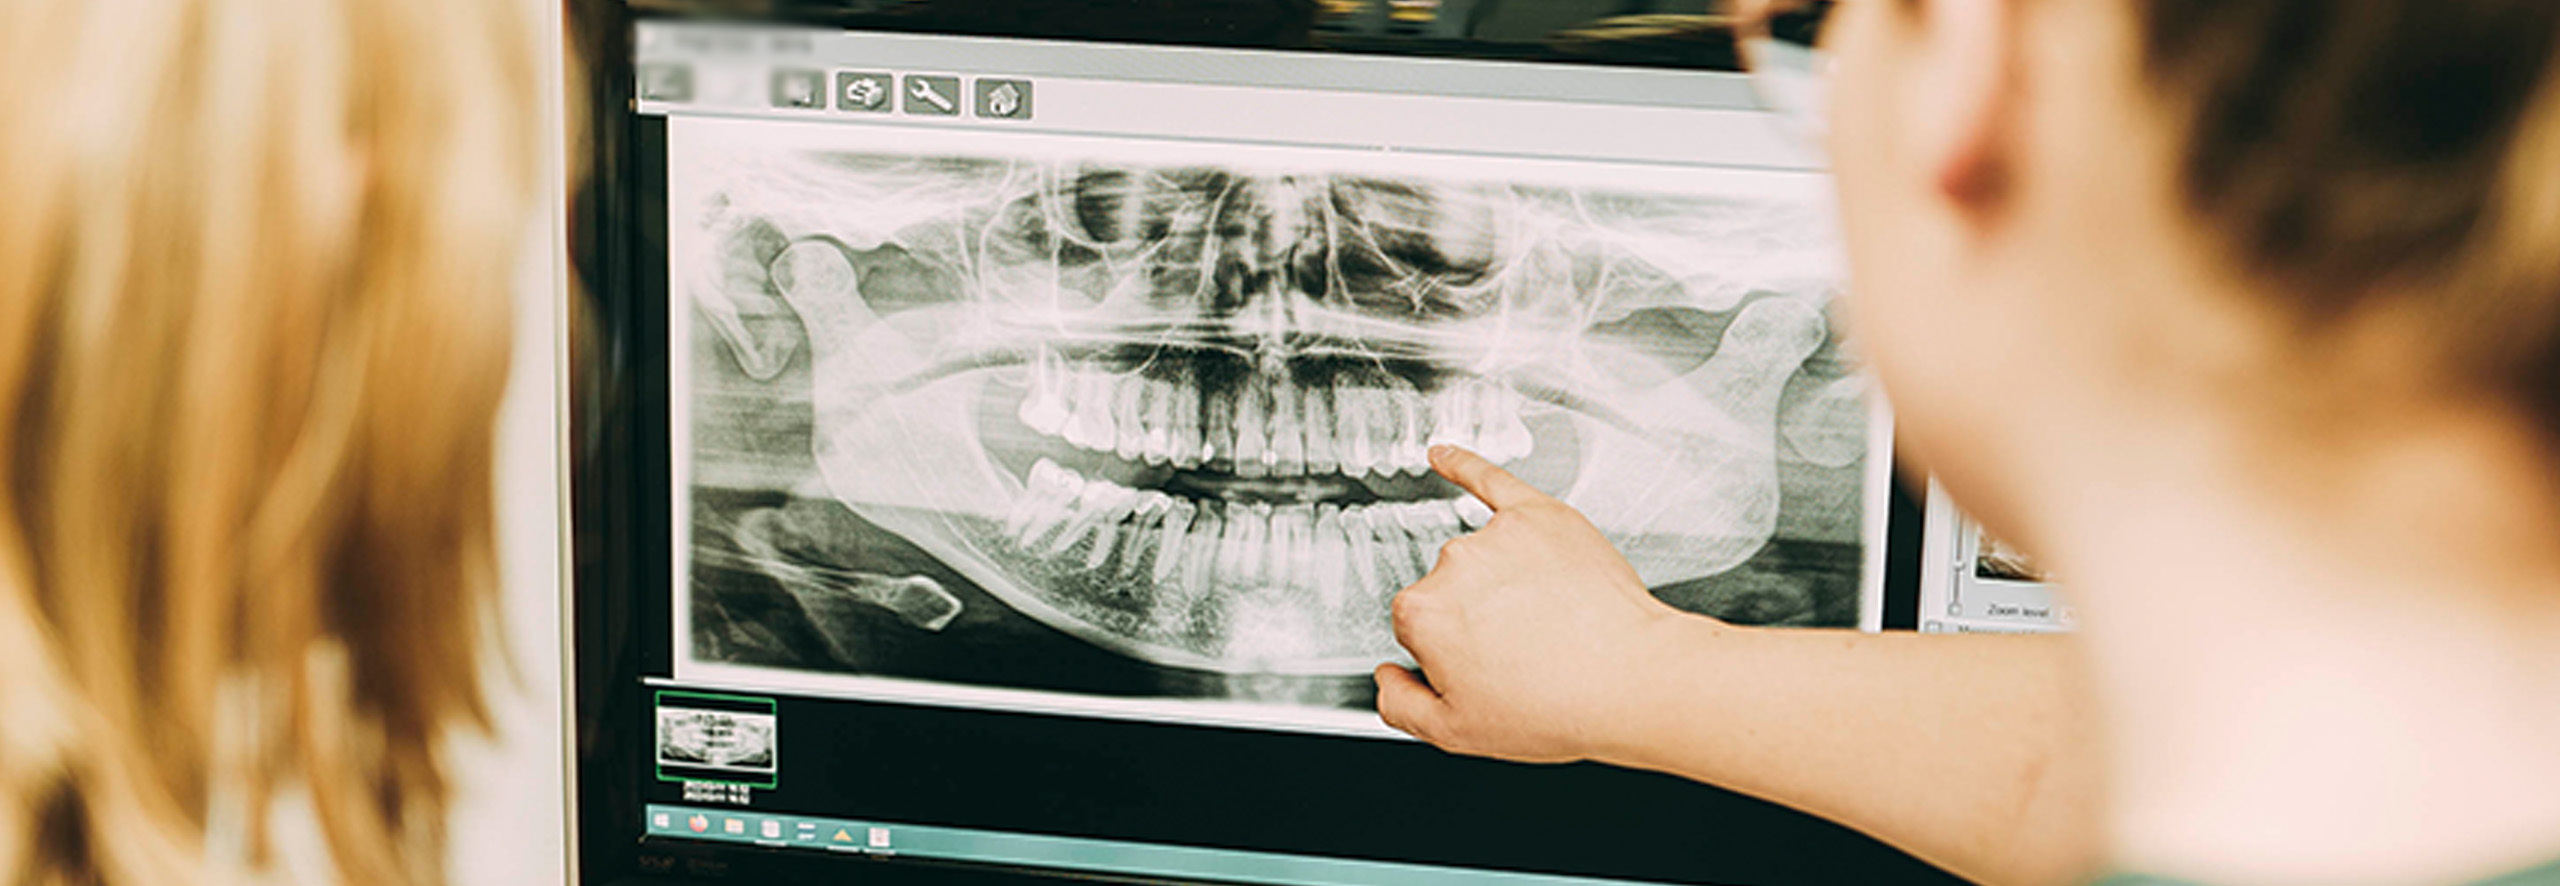 Zahnärztin Ricarda Richter zeigt auf einen Bildschirm in Ihrer Zahnarztpraxis, auf dem ein Röntgenbild von Zähnen gezeigt wird.